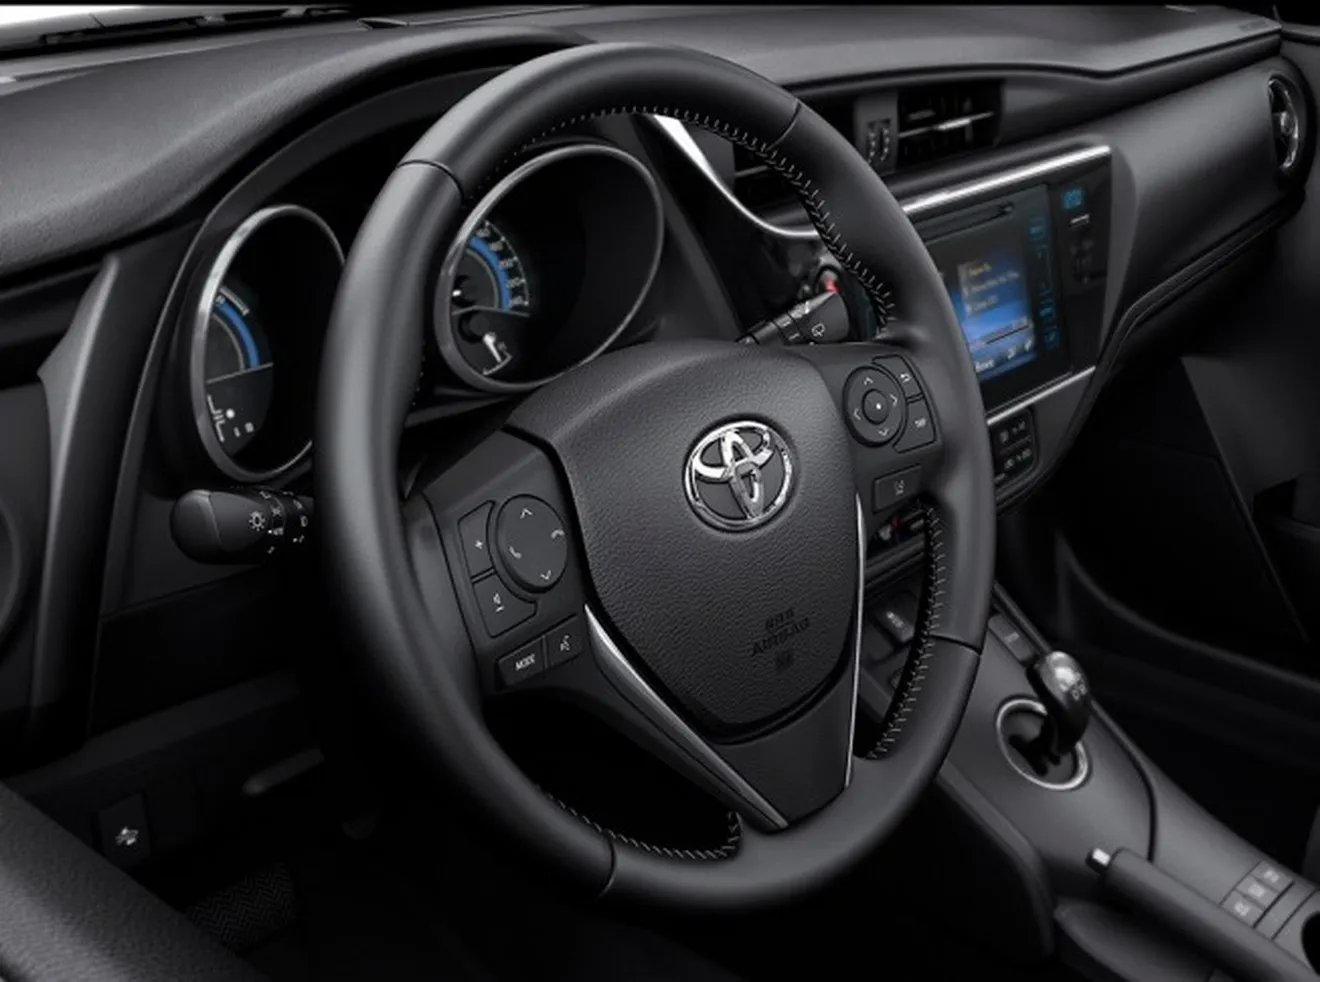 Toyota Auris 2016 - interior